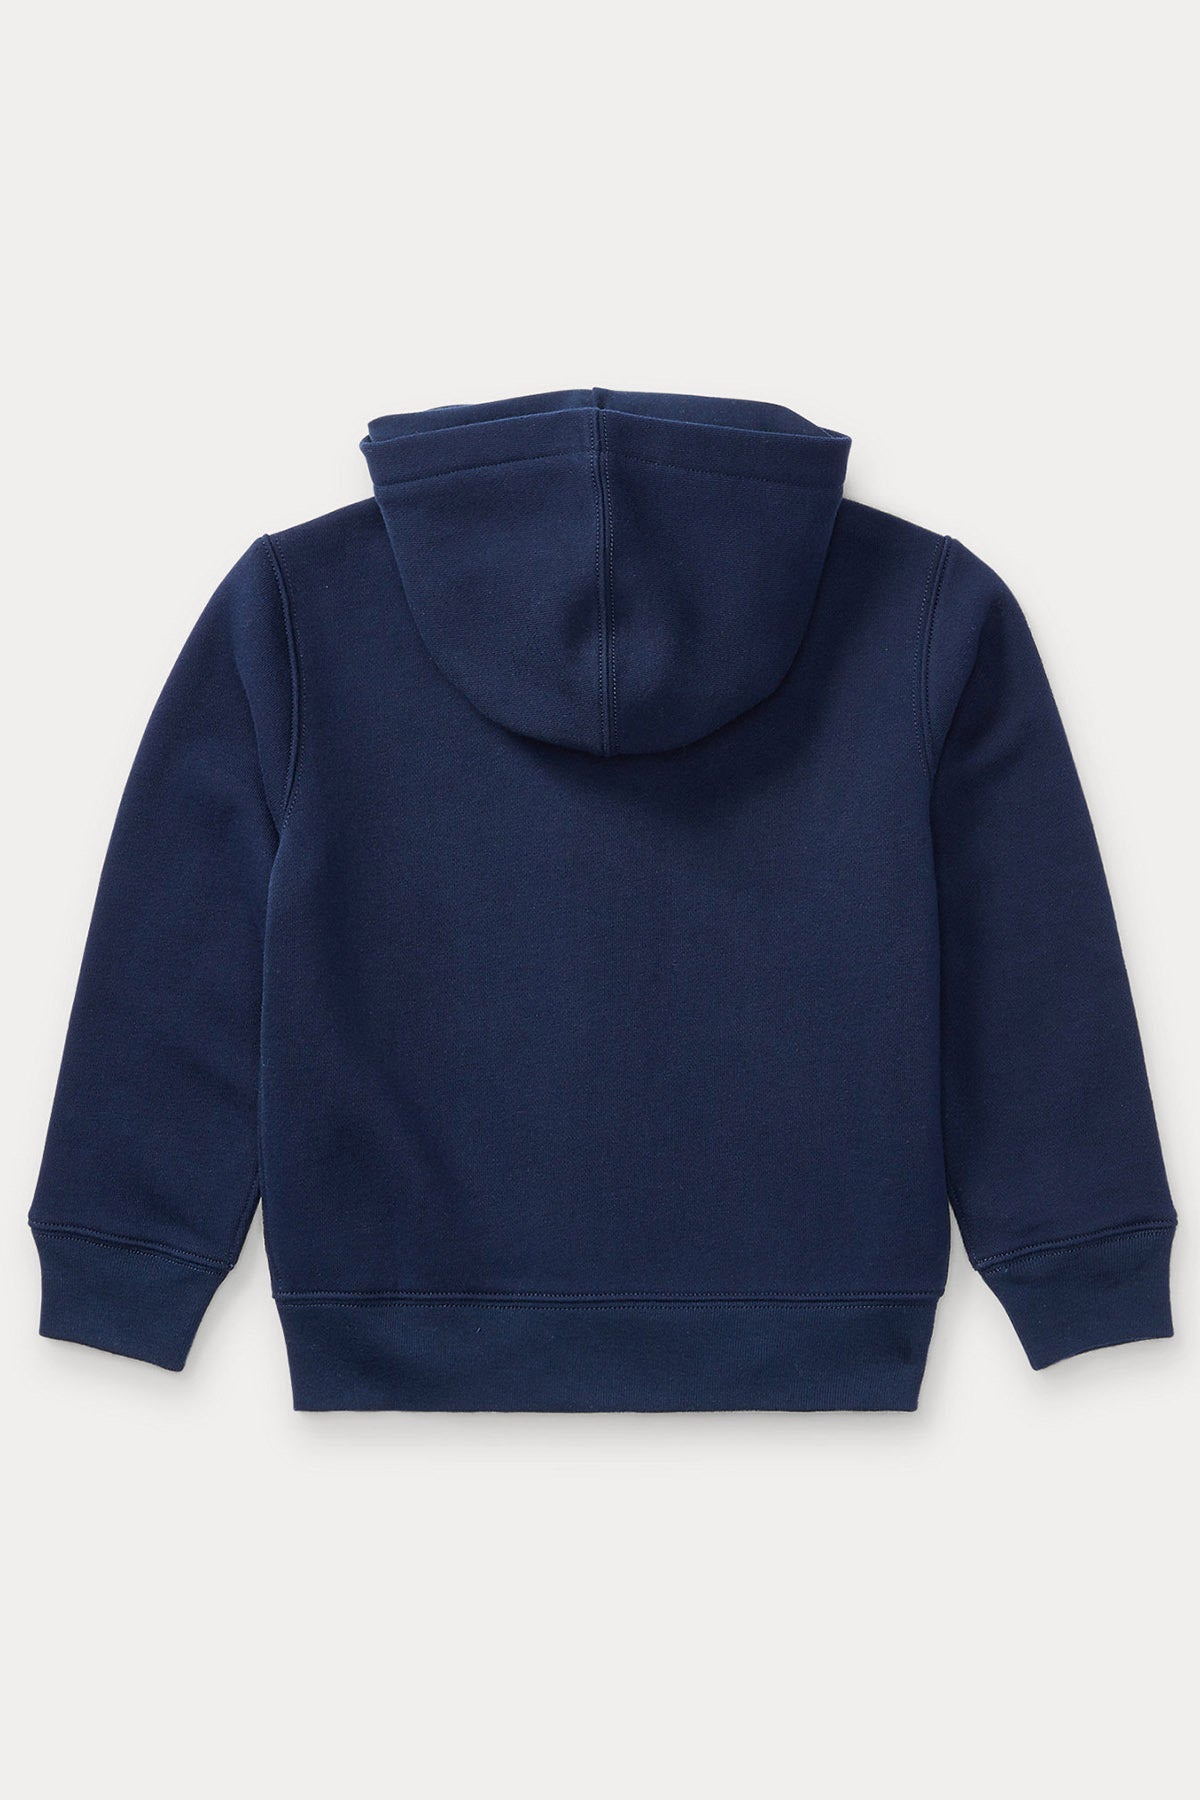 Polo Ralph Lauren Kids 3-7 Yaş Erkek Çocuk Kapüşonlu Sweatshirt Ceket-Libas Trendy Fashion Store